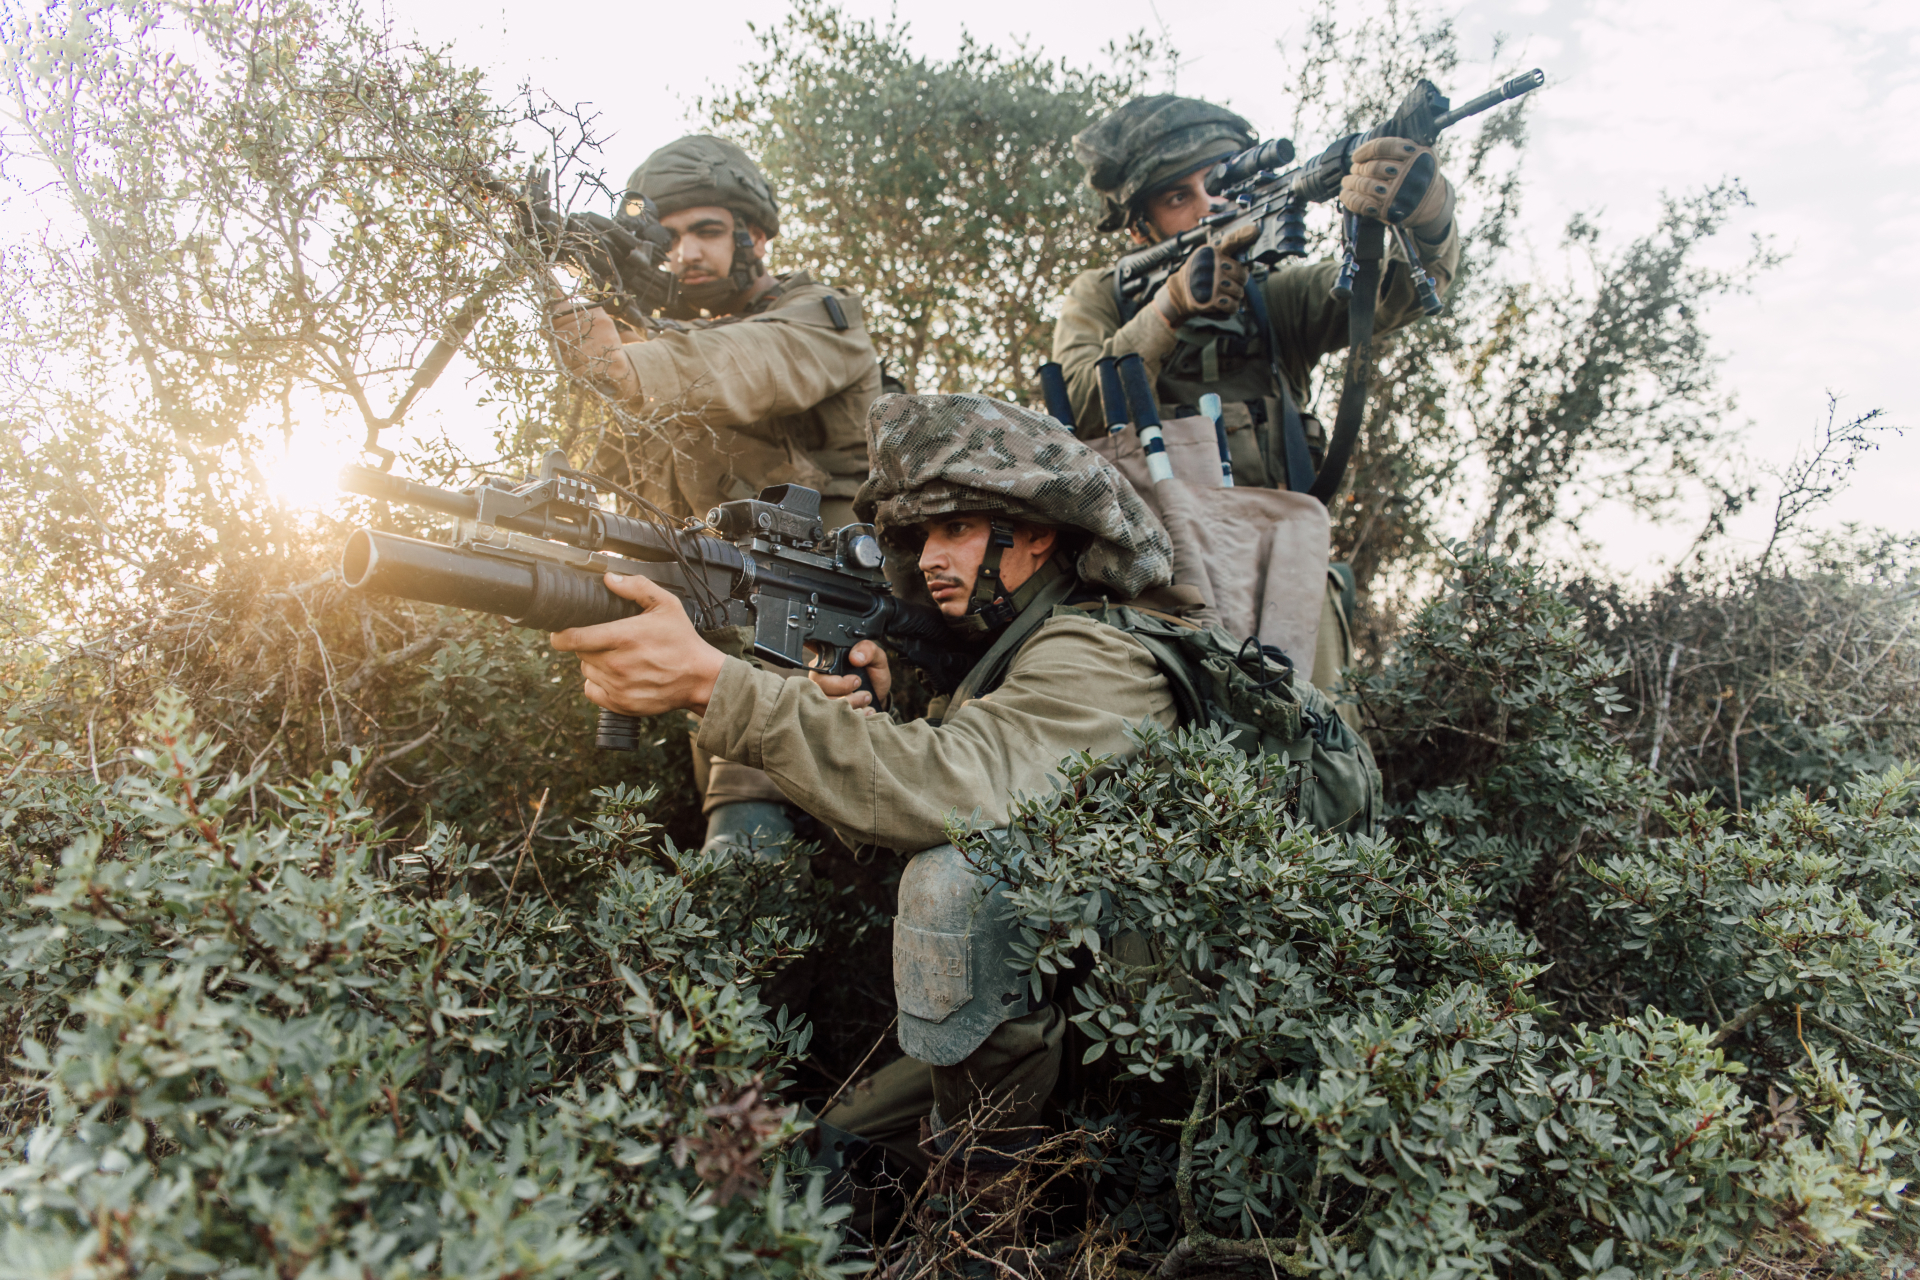 US Will Blacklist Israeli Military Unit Accused of Killing an American